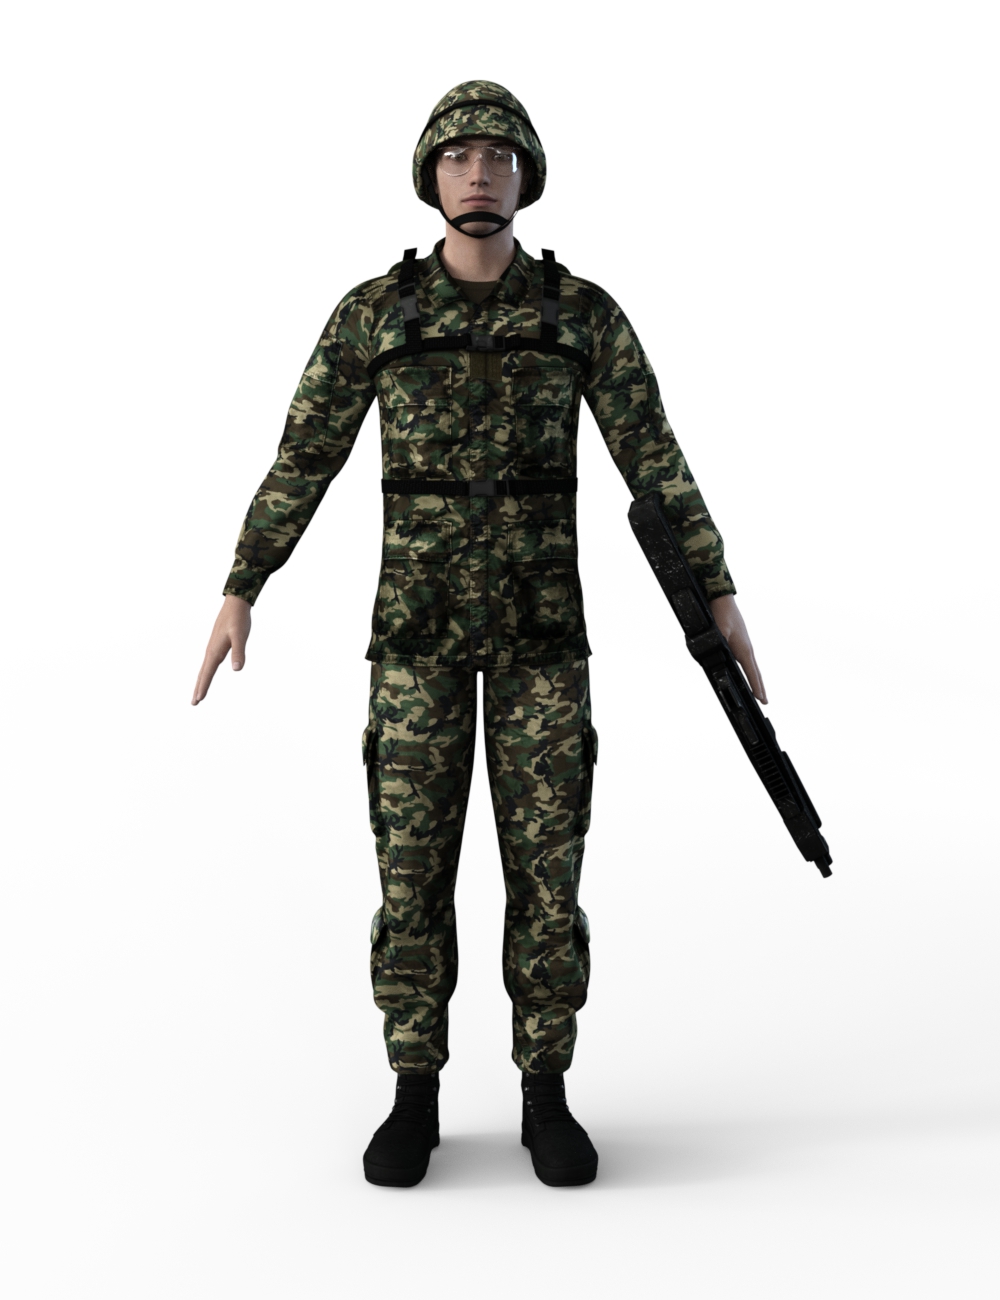 FBX- Base Male Army Uniform by: Paleo, 3D Models by Daz 3D